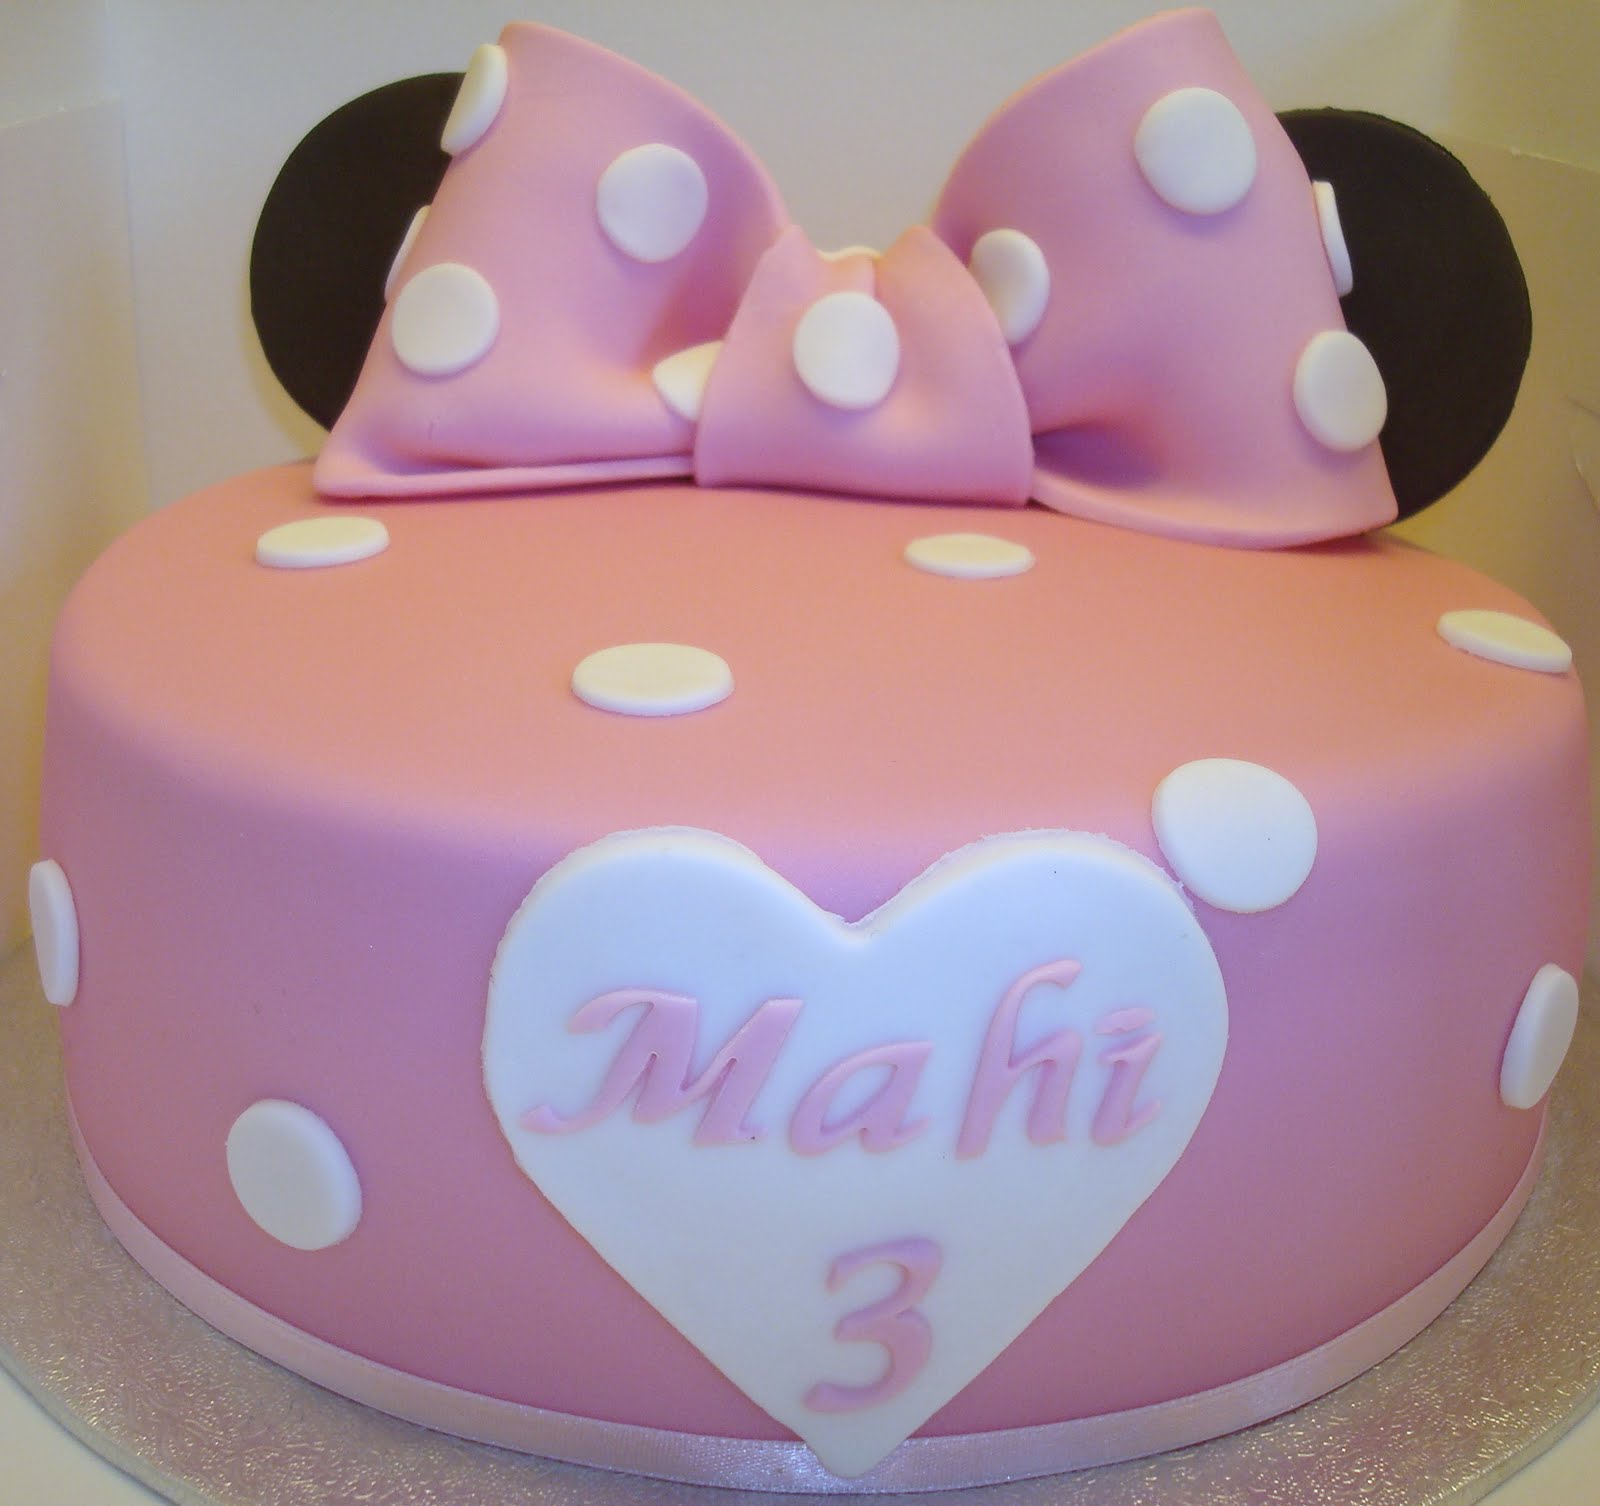 Fashion cake: minnie mouse cake